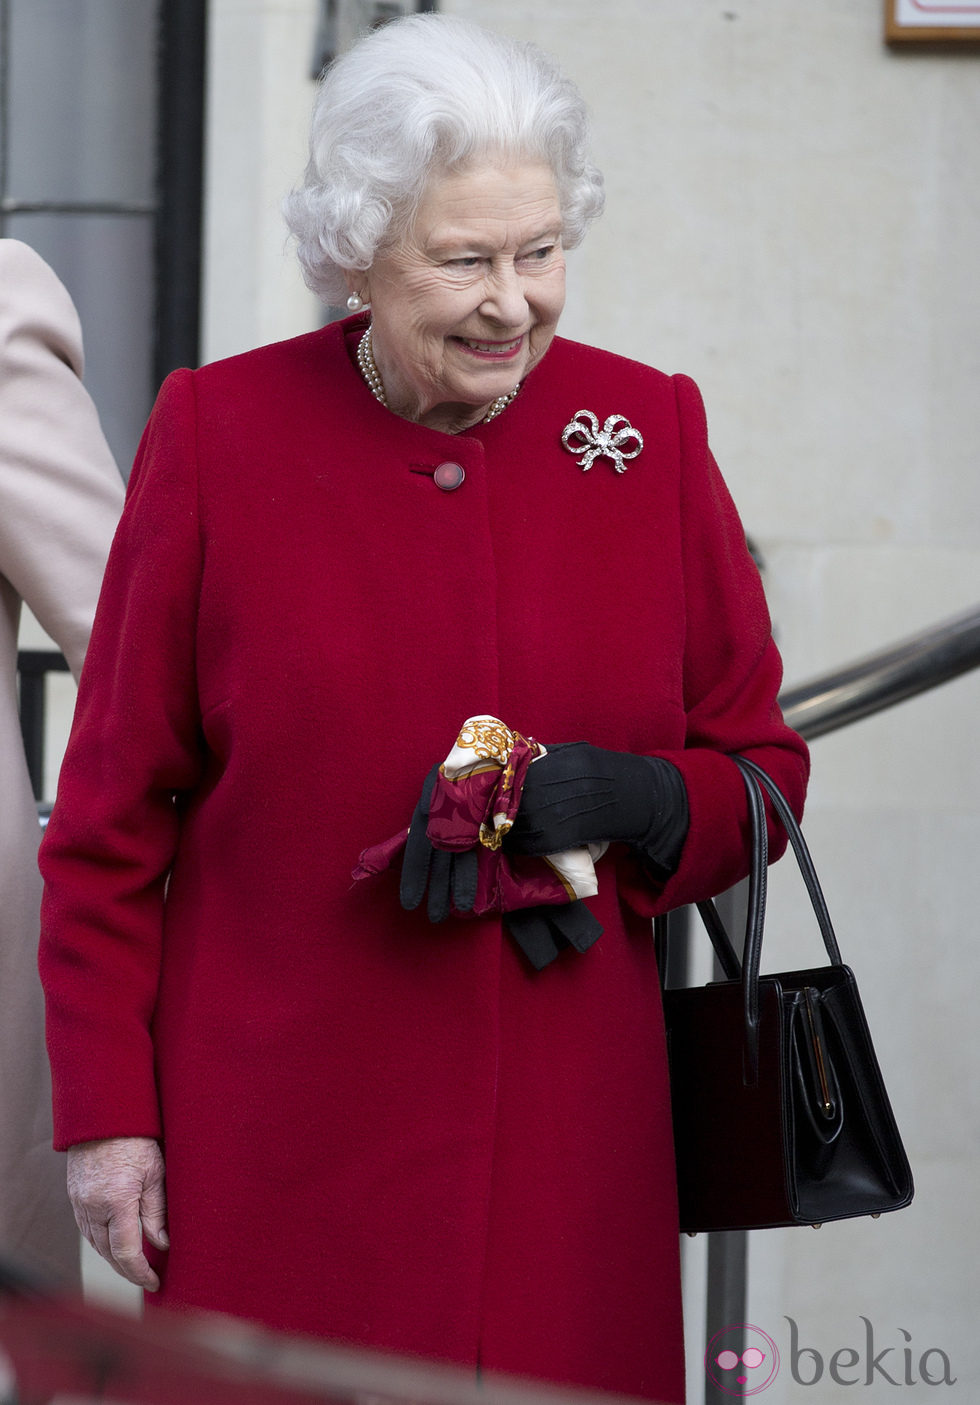 La Reina Isabel II sale del hospital un día después de su ingreso